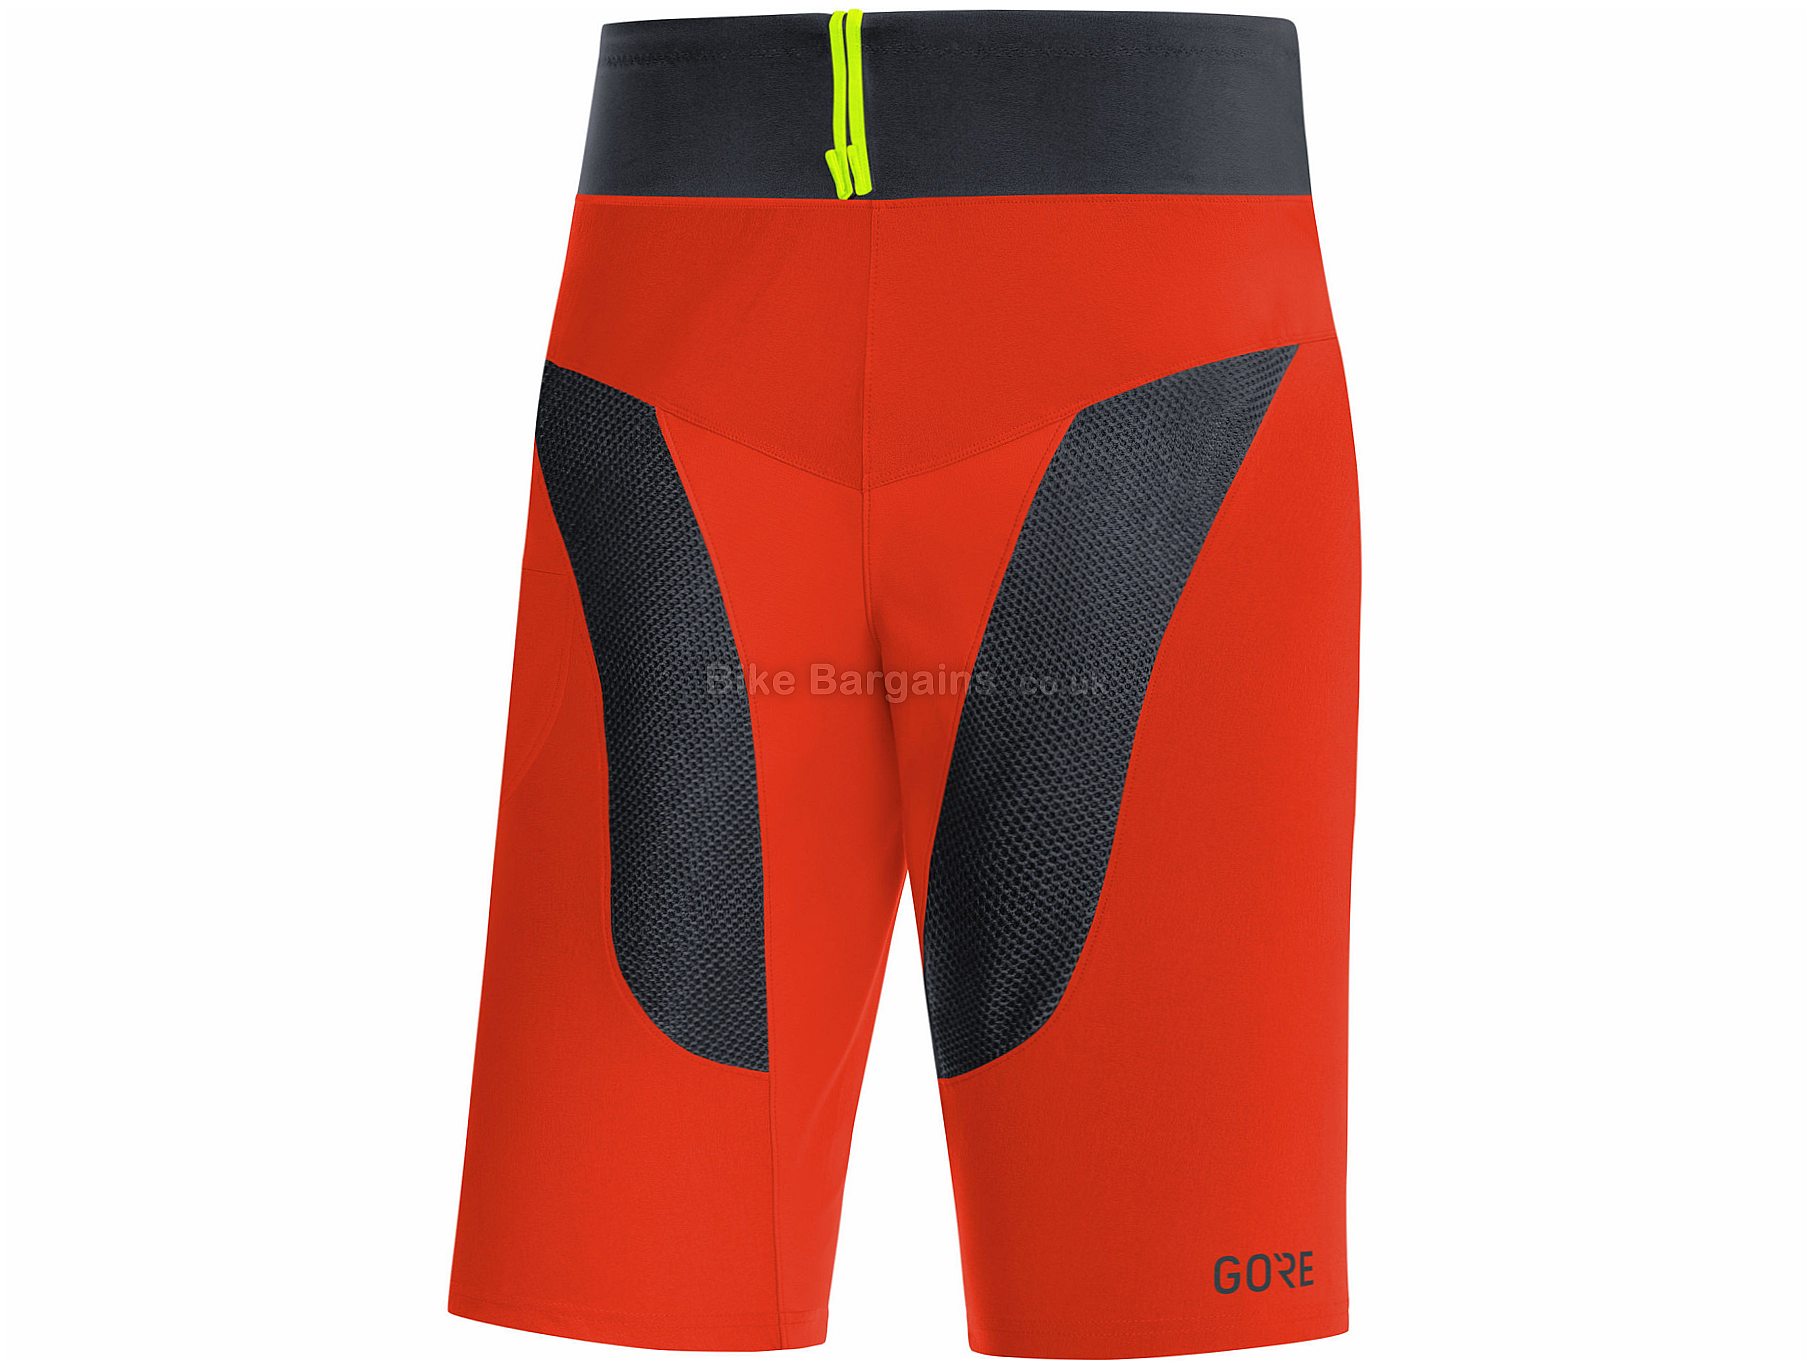 Gore Bike Wear шорты. Gore Bike Wear штаны. Gore c5. Белье для волейбола жембрь и штаны черно красная.